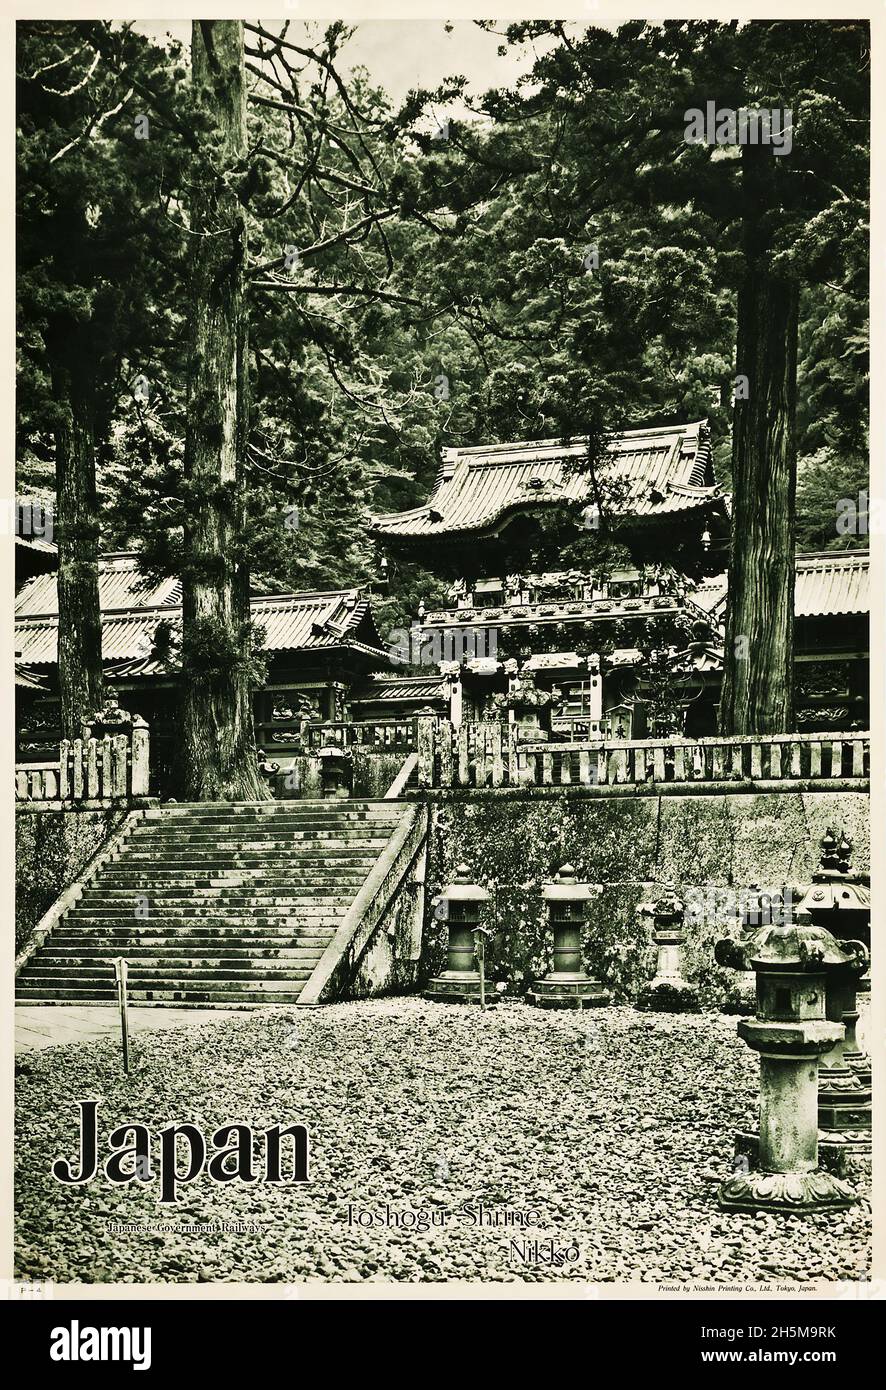 Affiche de voyage japonaise (chemins de fer du gouvernement japonais, Circa 1936).Affiche japonaise. Banque D'Images